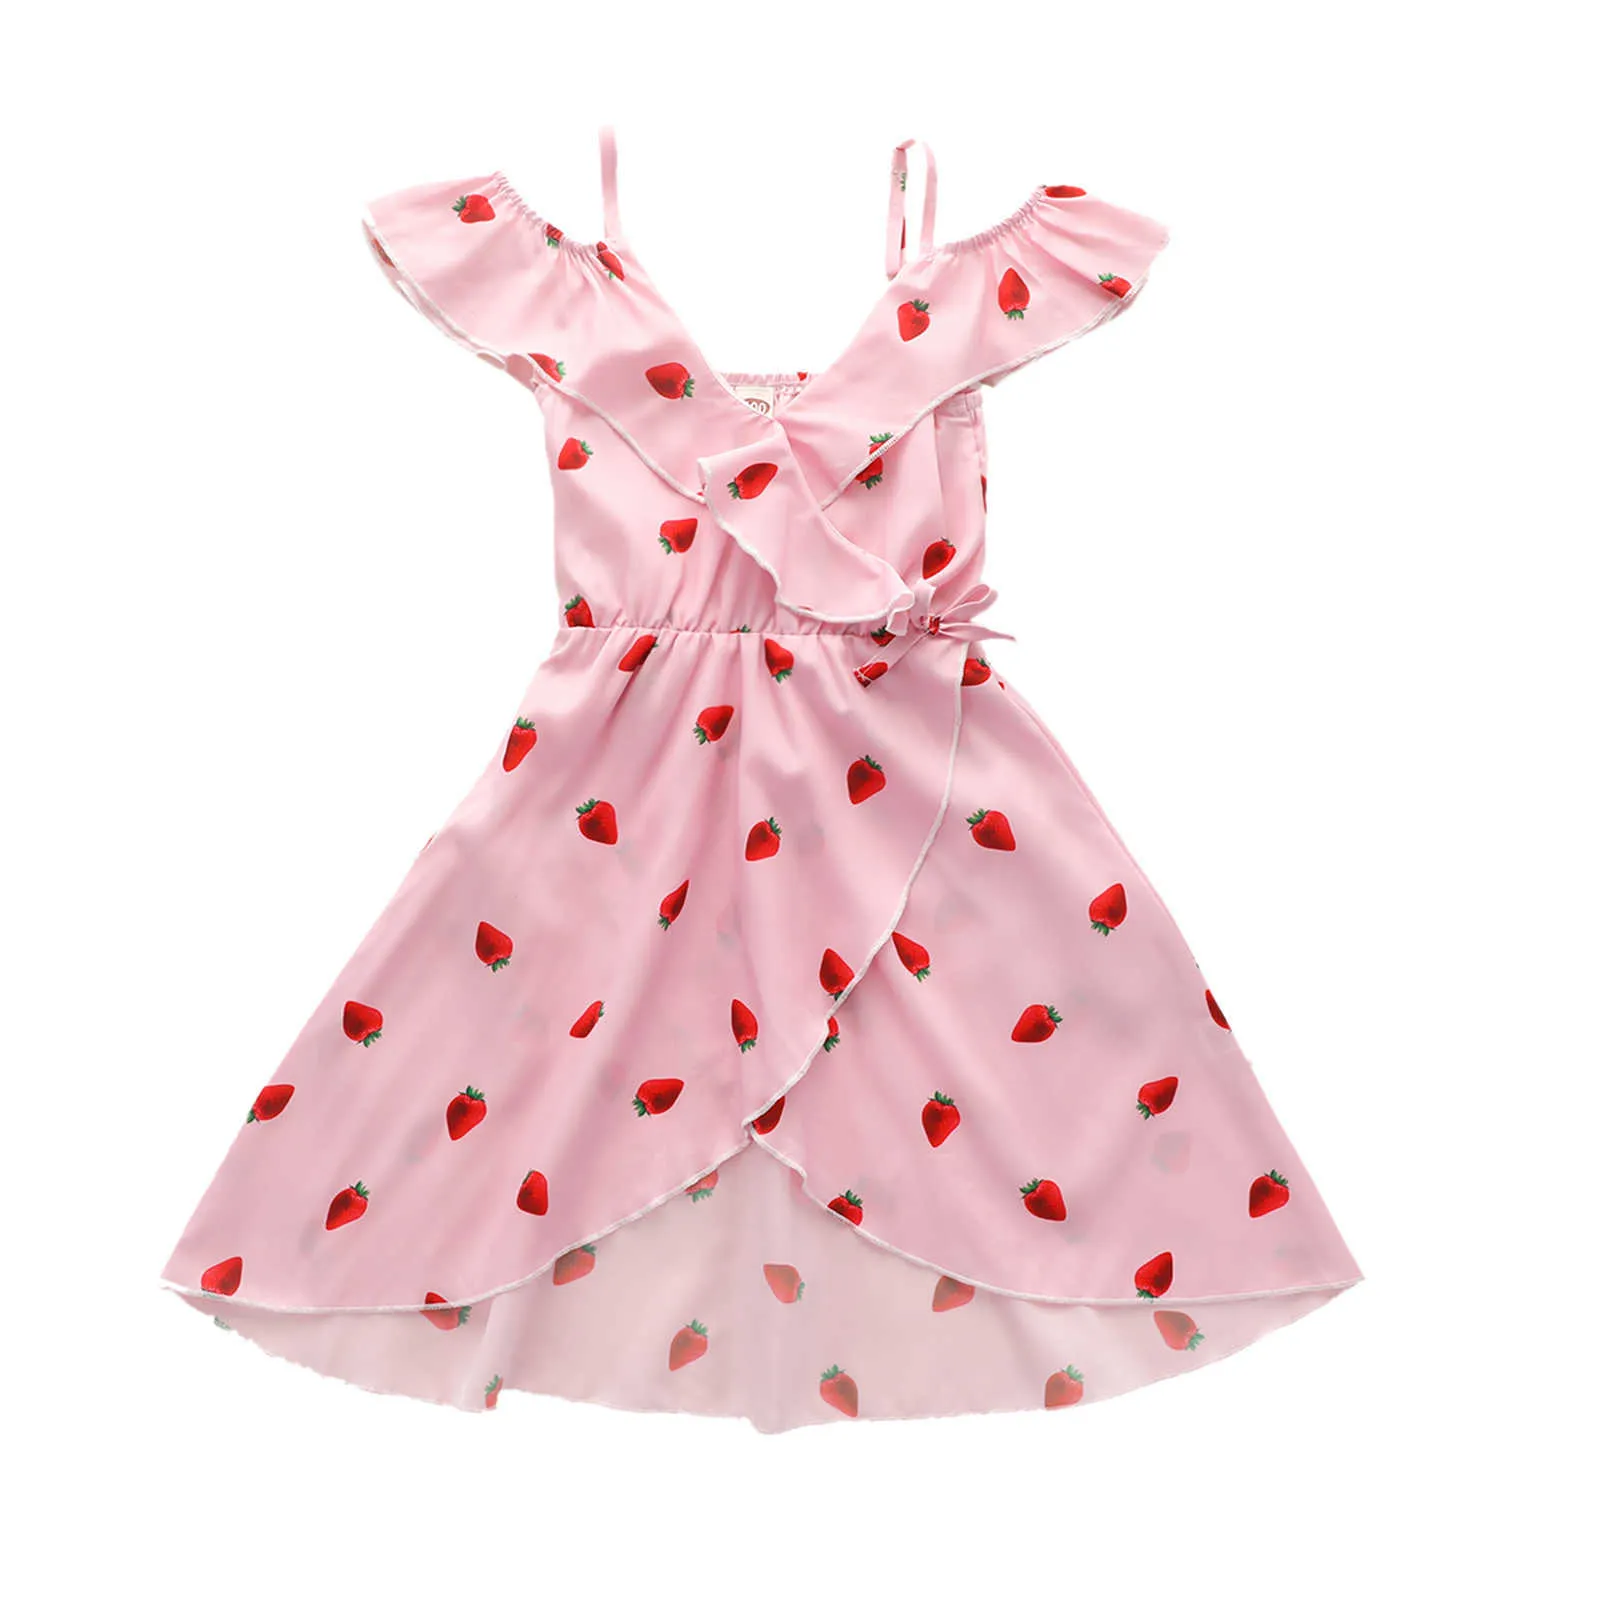 幼児の赤ちゃんの女の子のドレス、イチゴの印刷ノースリーブの衣装、カジュアルなVネックハイウエストワンピース服2-7t Q0716